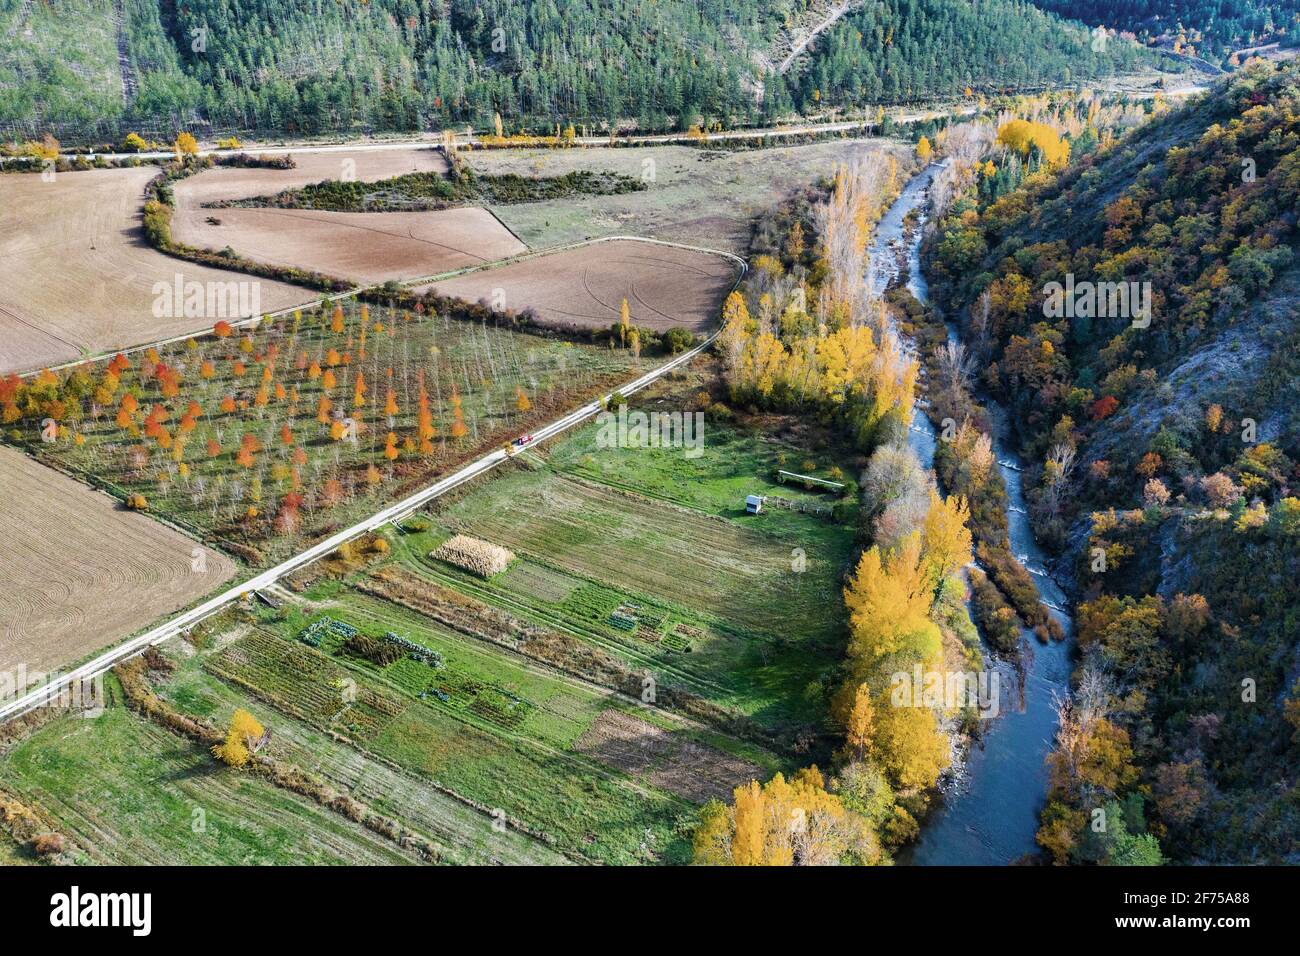 Vue aérienne d'une rivière et d'une terre agricole avec végétation riveraine en automne. Banque D'Images